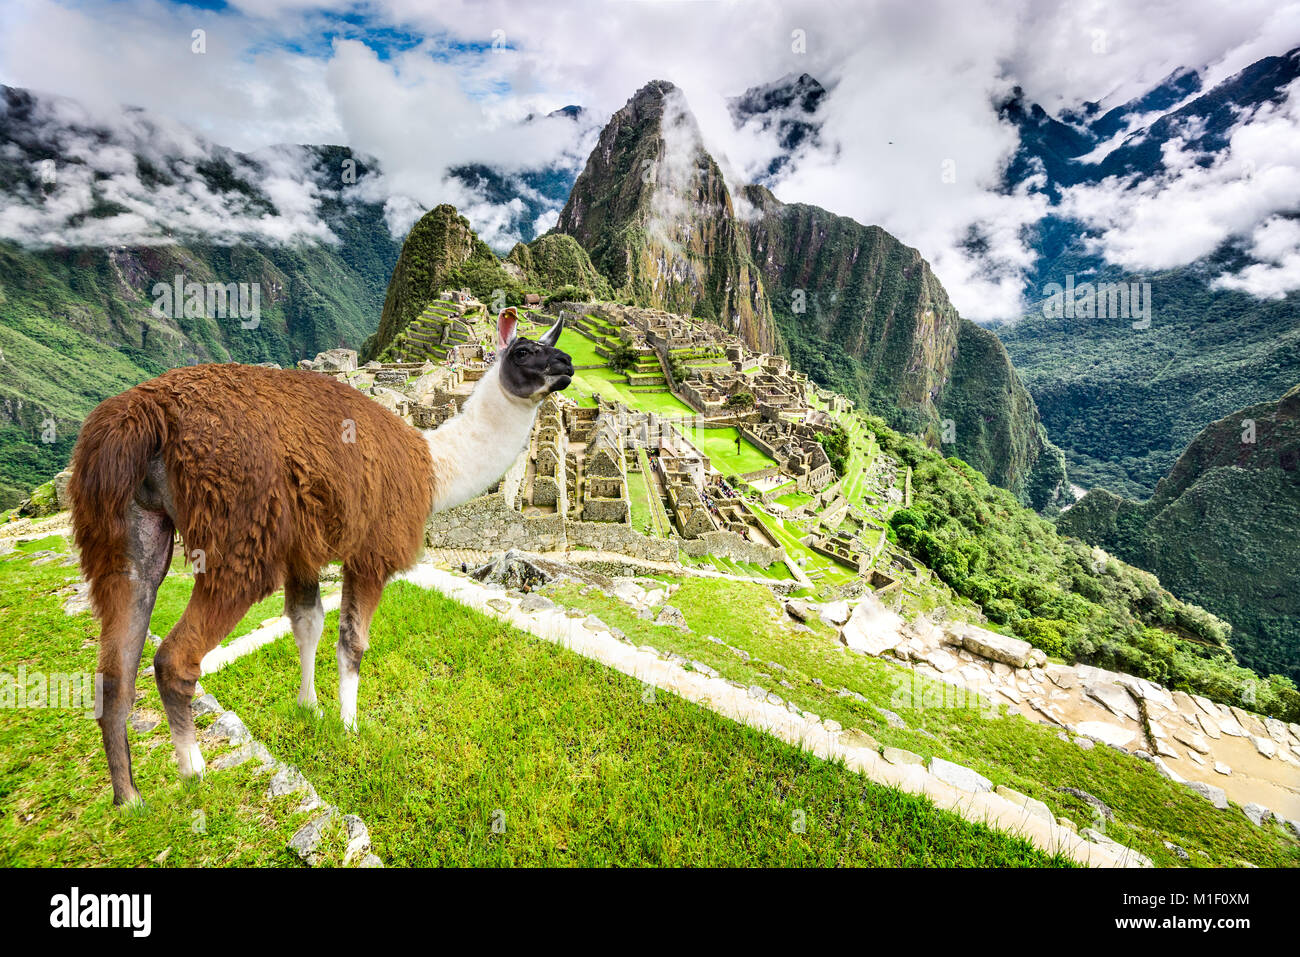 Machu Picchu, Cusco, Peru - Inca Empire City und Huaynapicchu Berg, das Heilige Tal. Fantastischer Ort von Südamerika. Stockfoto